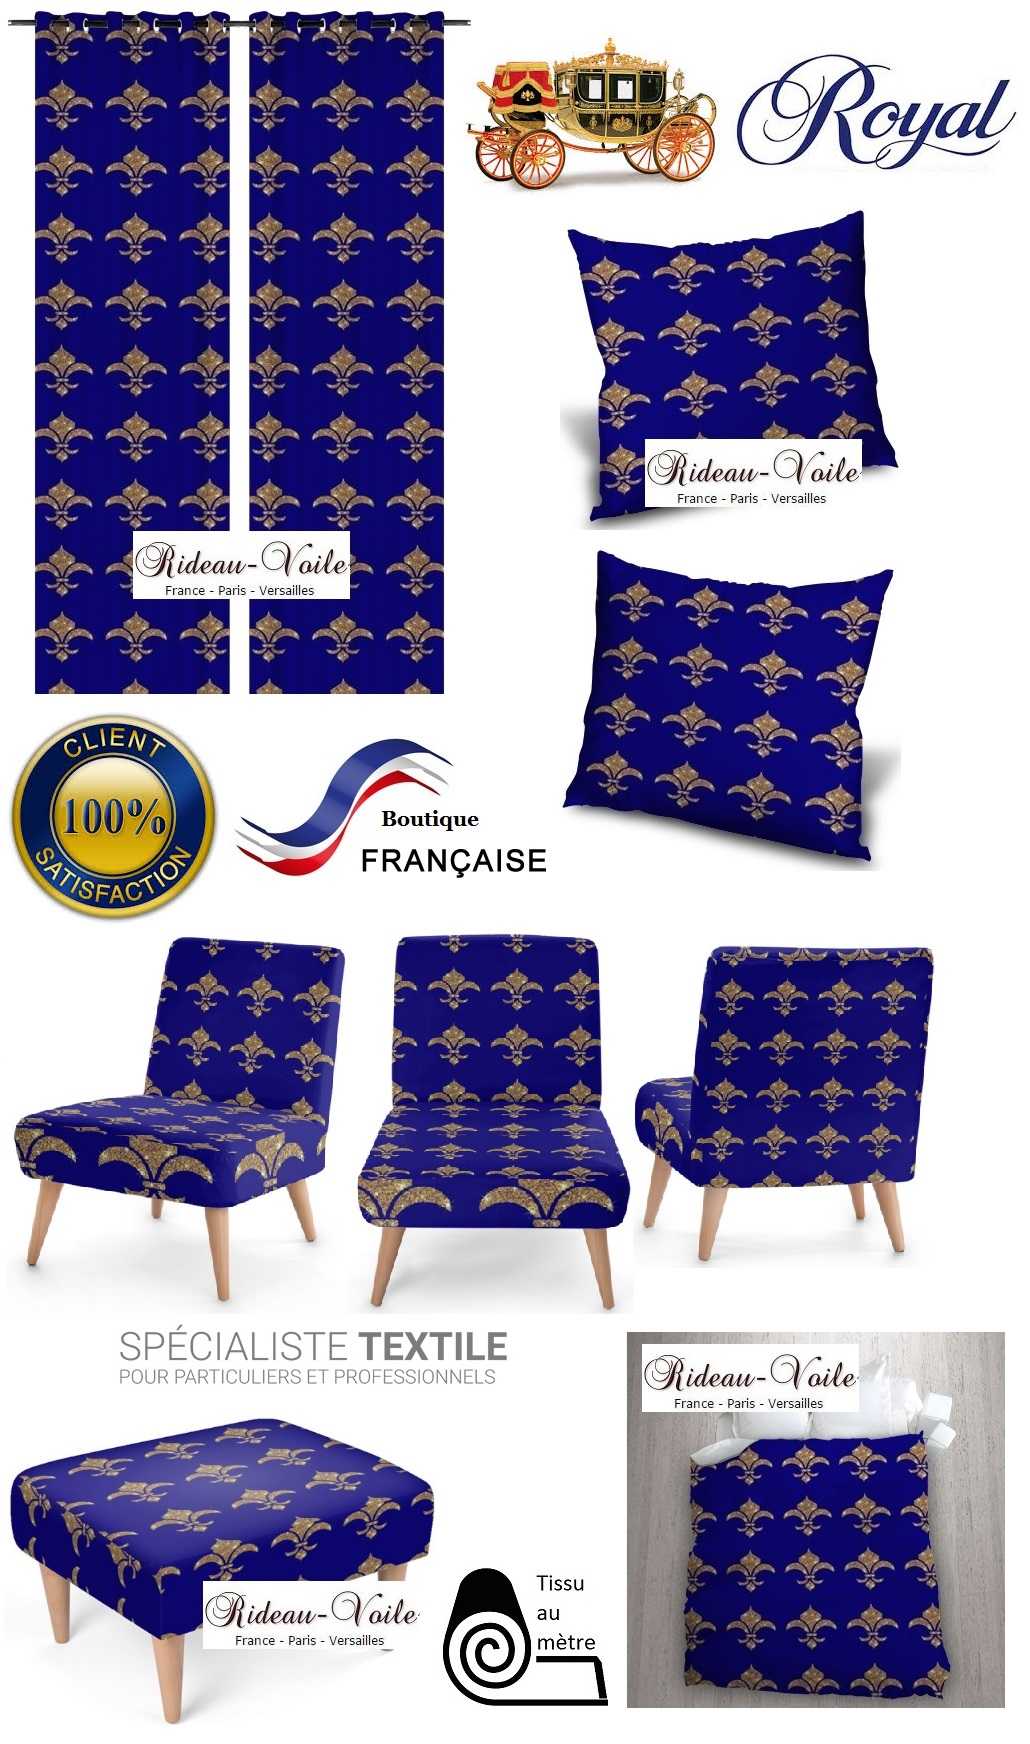 emblème royal fauteuil siège rideau coussin tapisserie garnissage décoration décorateur style Empire fleur de lys or bleu déco luxe Paris Versailles Quebec